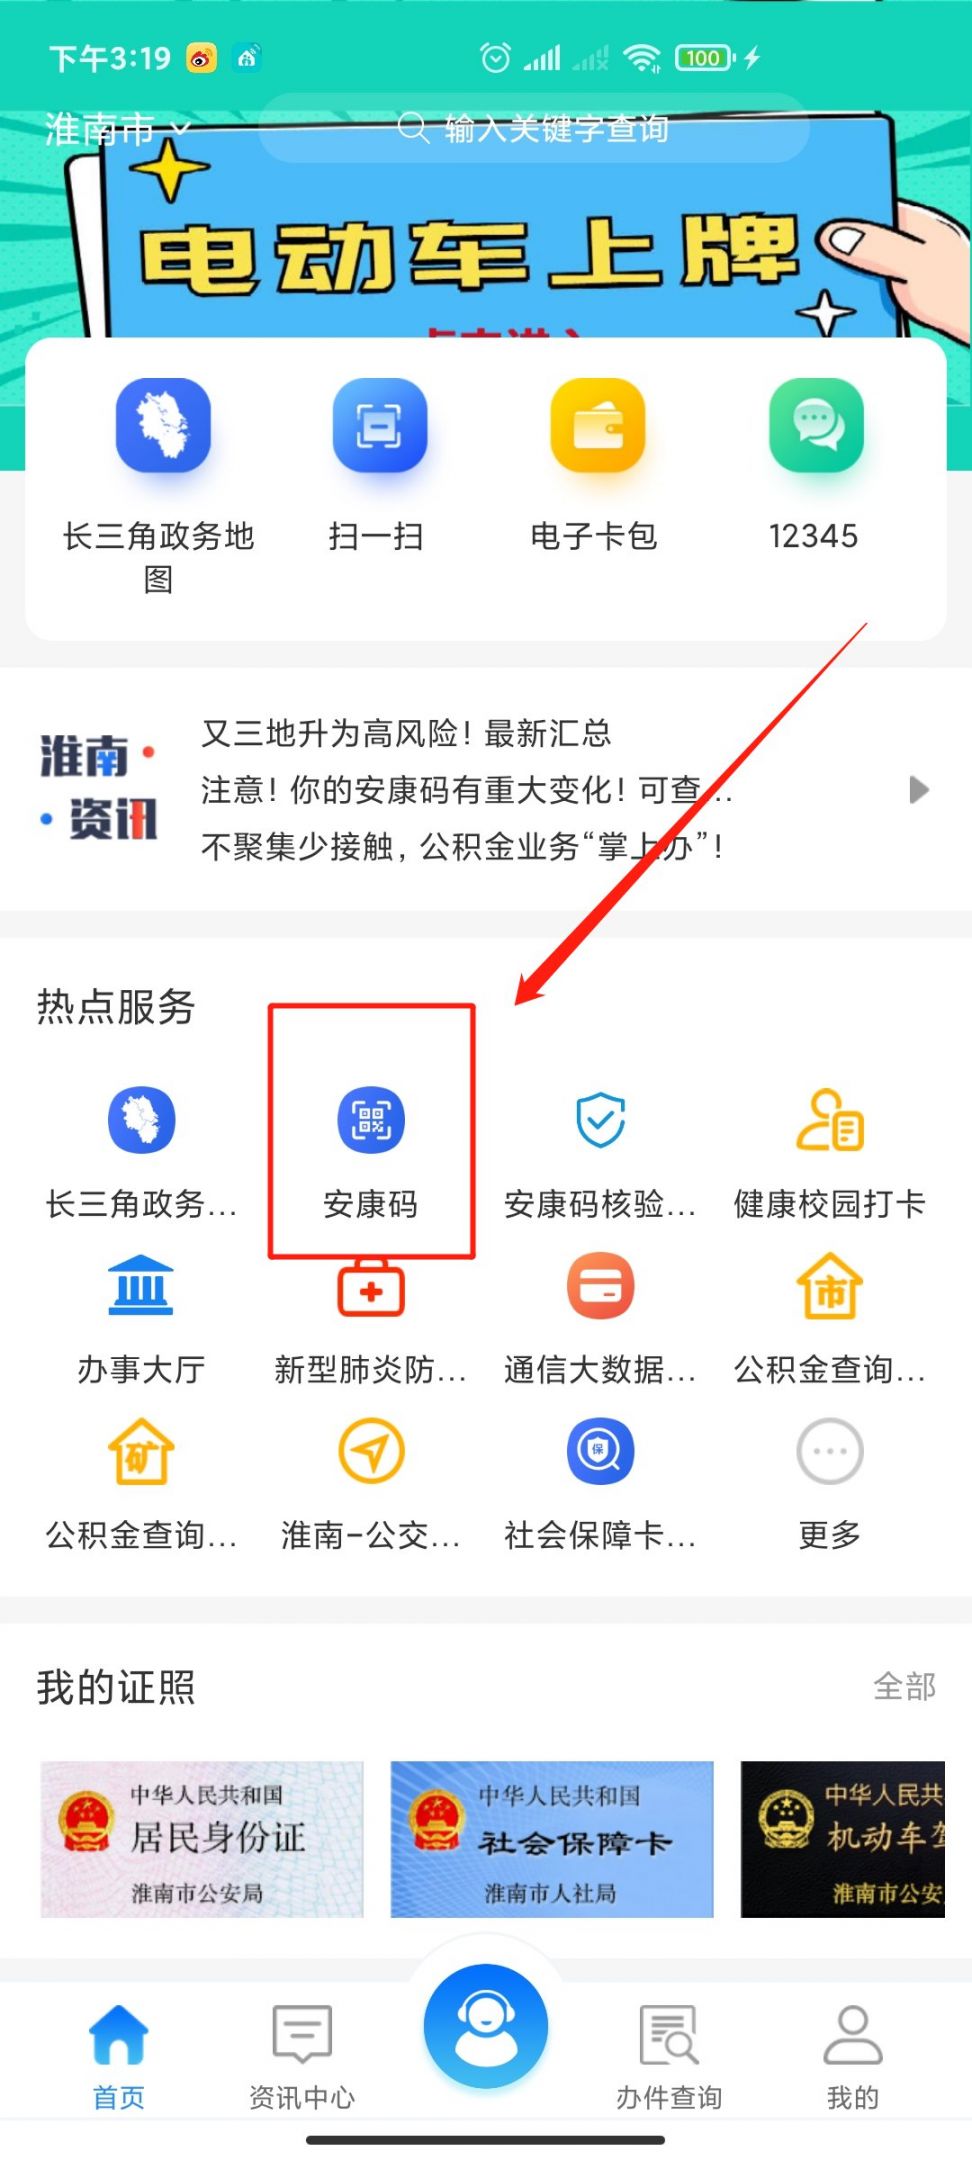 "安康码-行程卡"查询方式:    第一步:下载"皖事通"app,注册并